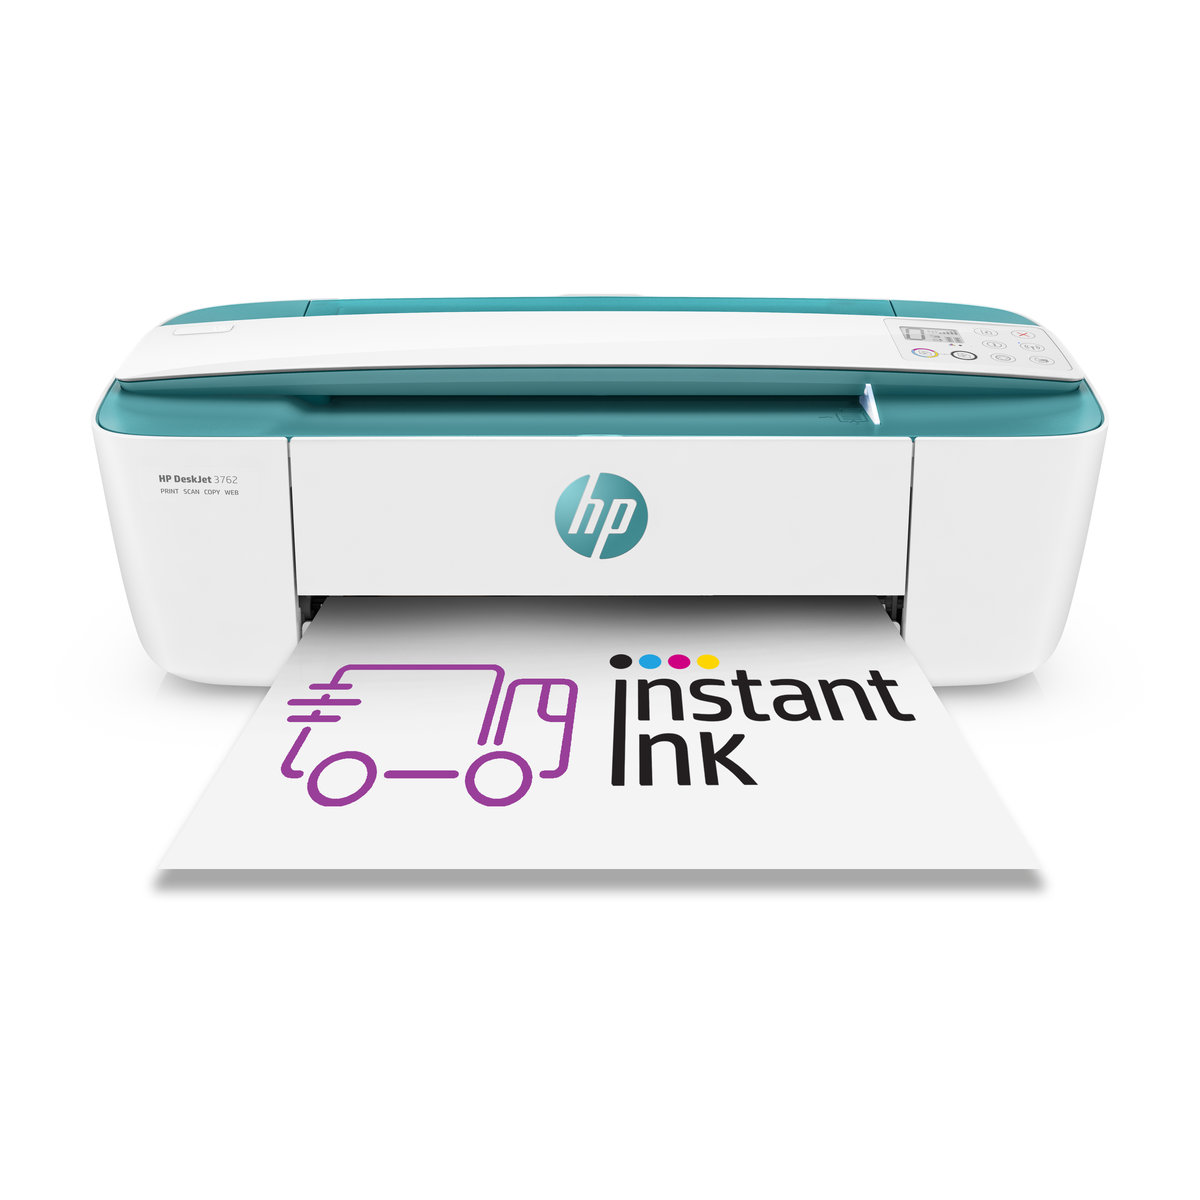 HP DeskJet 3762 - HP Instant Ink ready (T8X23B)